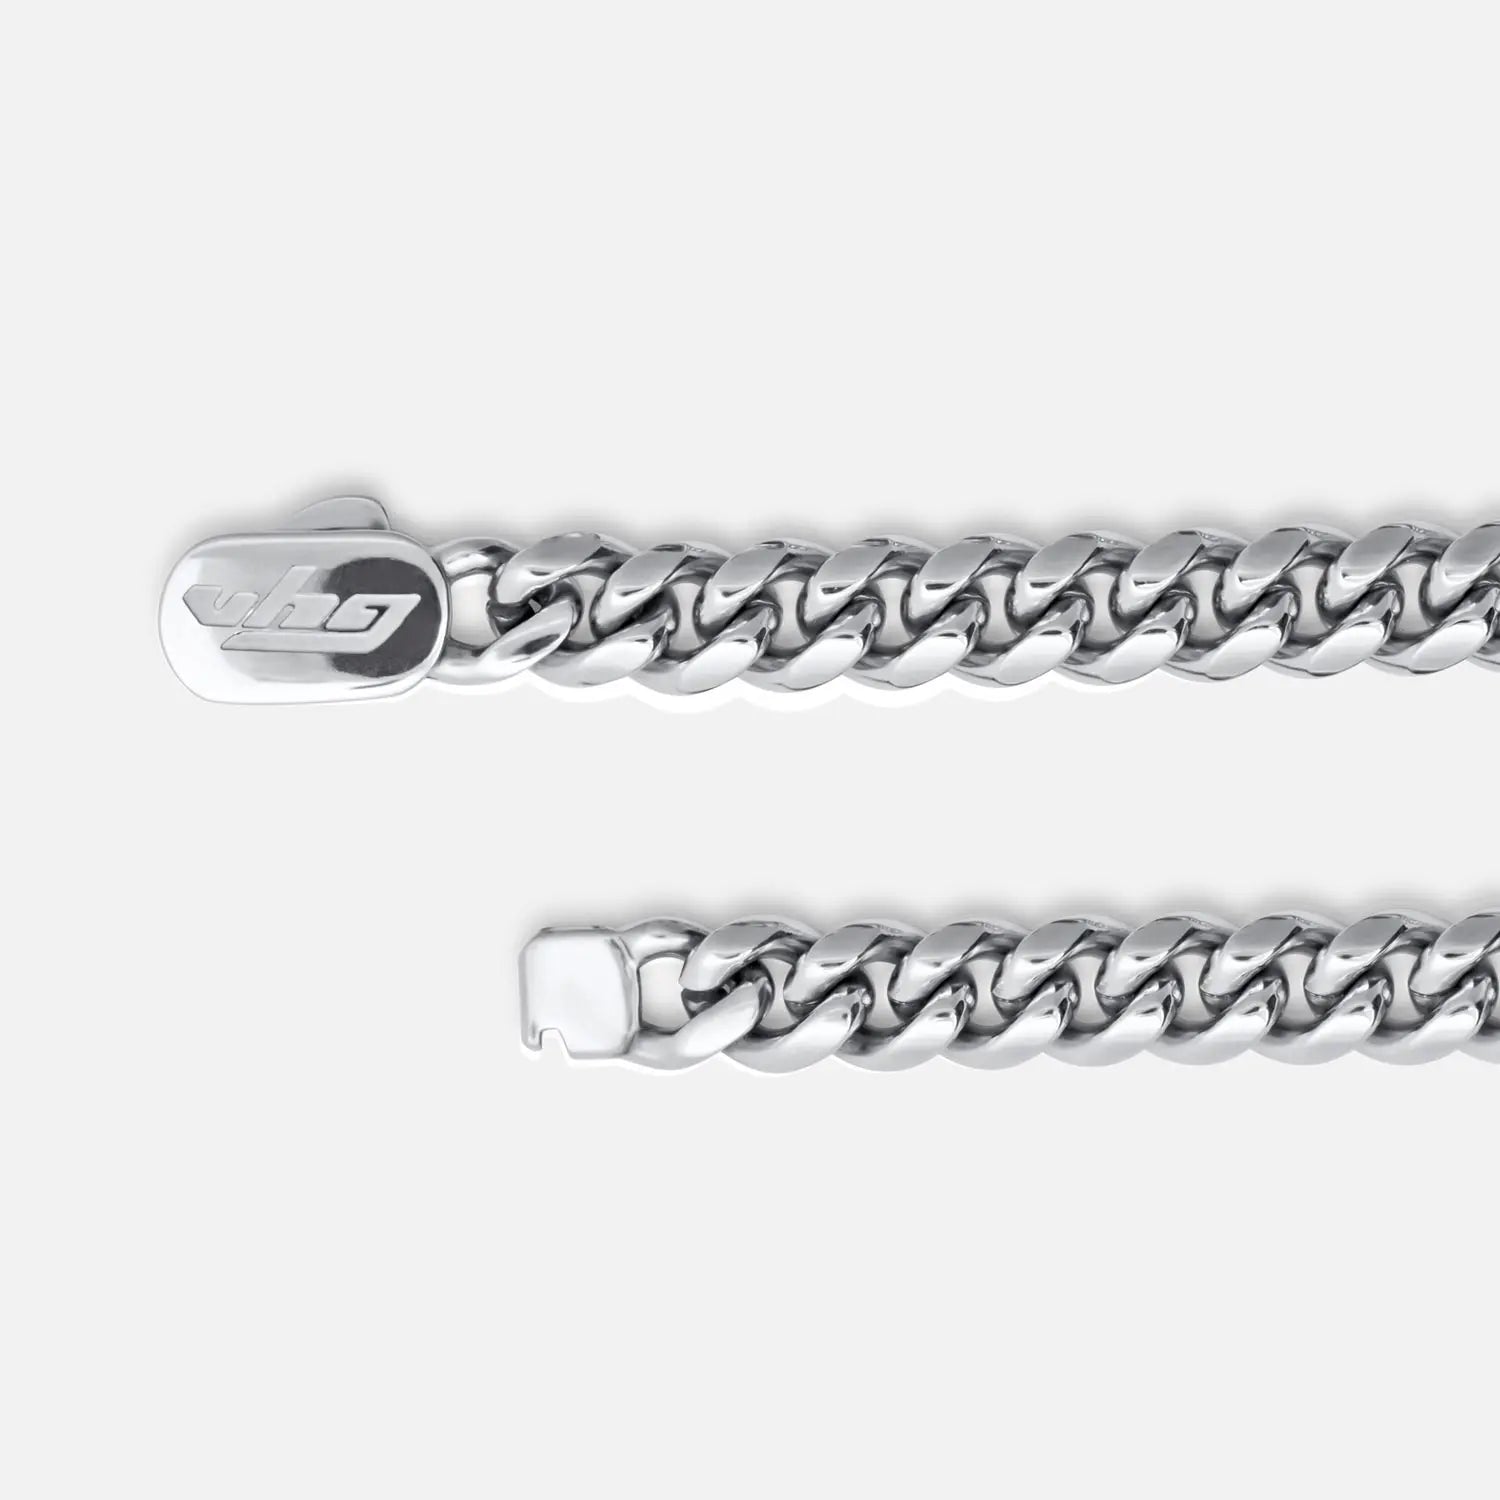 Verschluss einer Cuban Link Halskette in 8mm breite mit einem Klickverschluss der vhg eingraviert hat